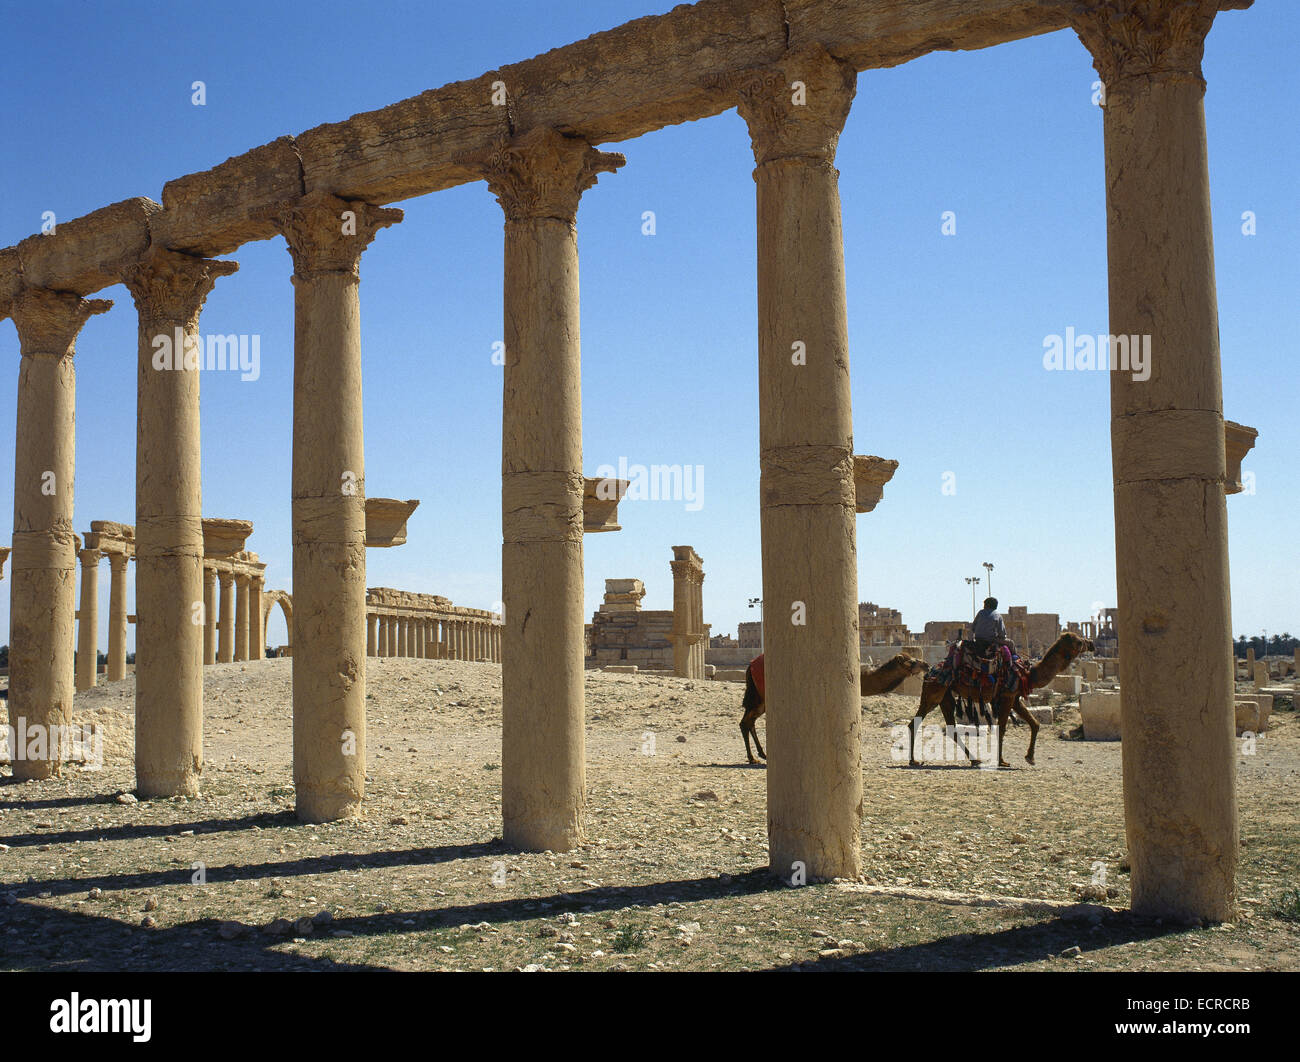 La Siria. Rovine di Palmyra. Medio Oriente. Colonnato. Iii secolo D.C. Oasis Tadmor. Vicino Oriente. Foto Stock